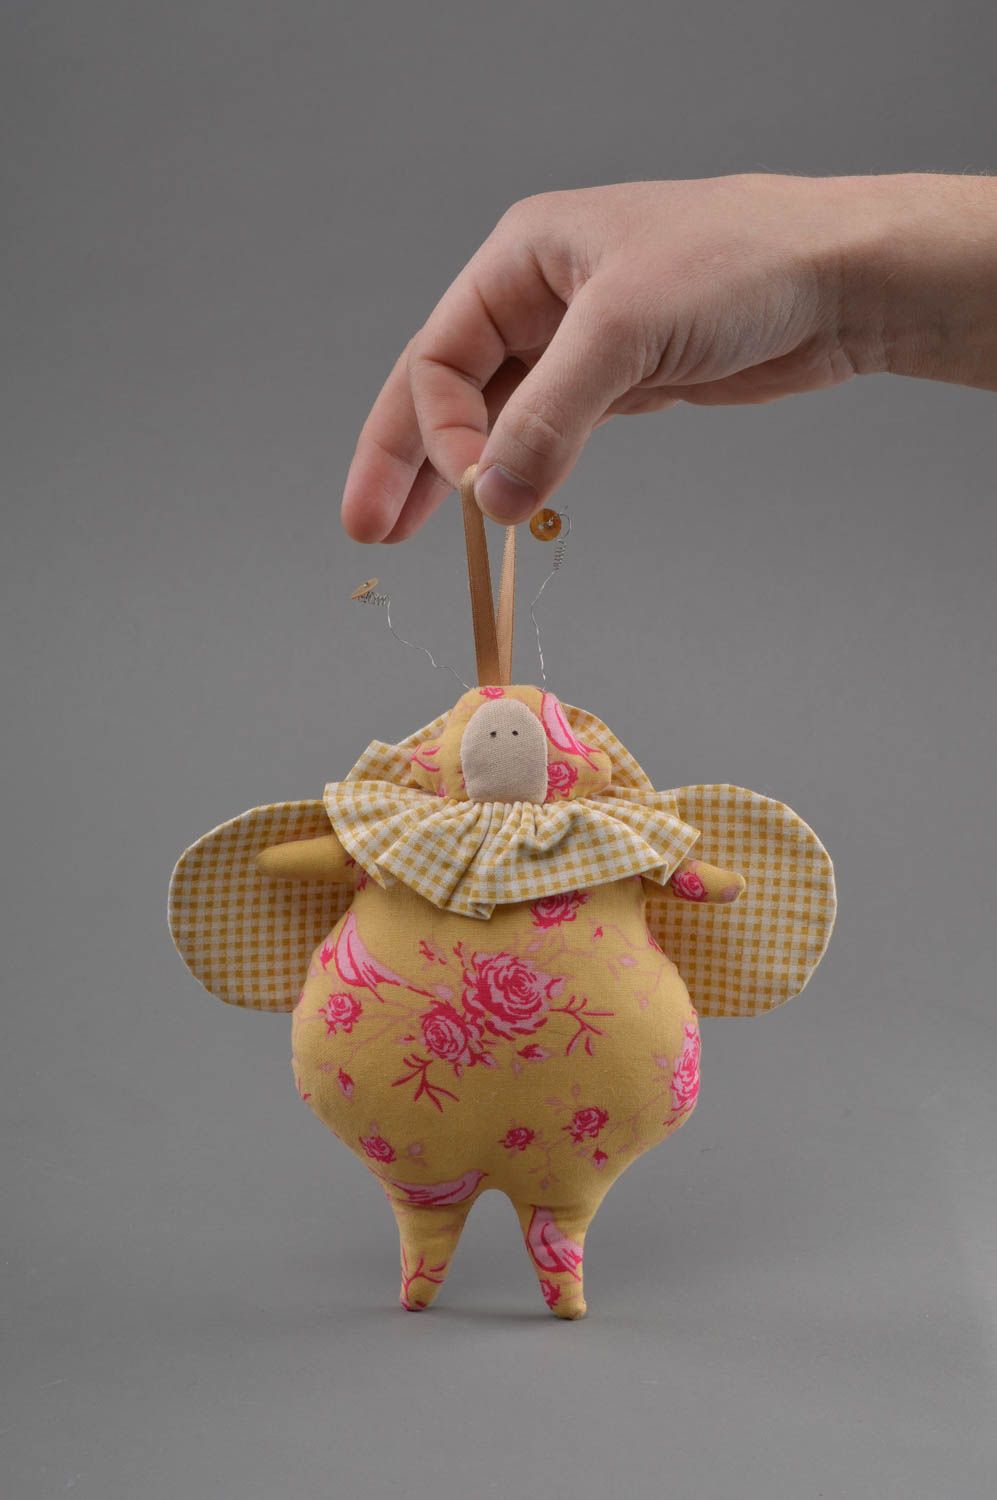 Textil Kuscheltier Käfer klein weich bunt handmade Spielzeug für Kinder foto 4